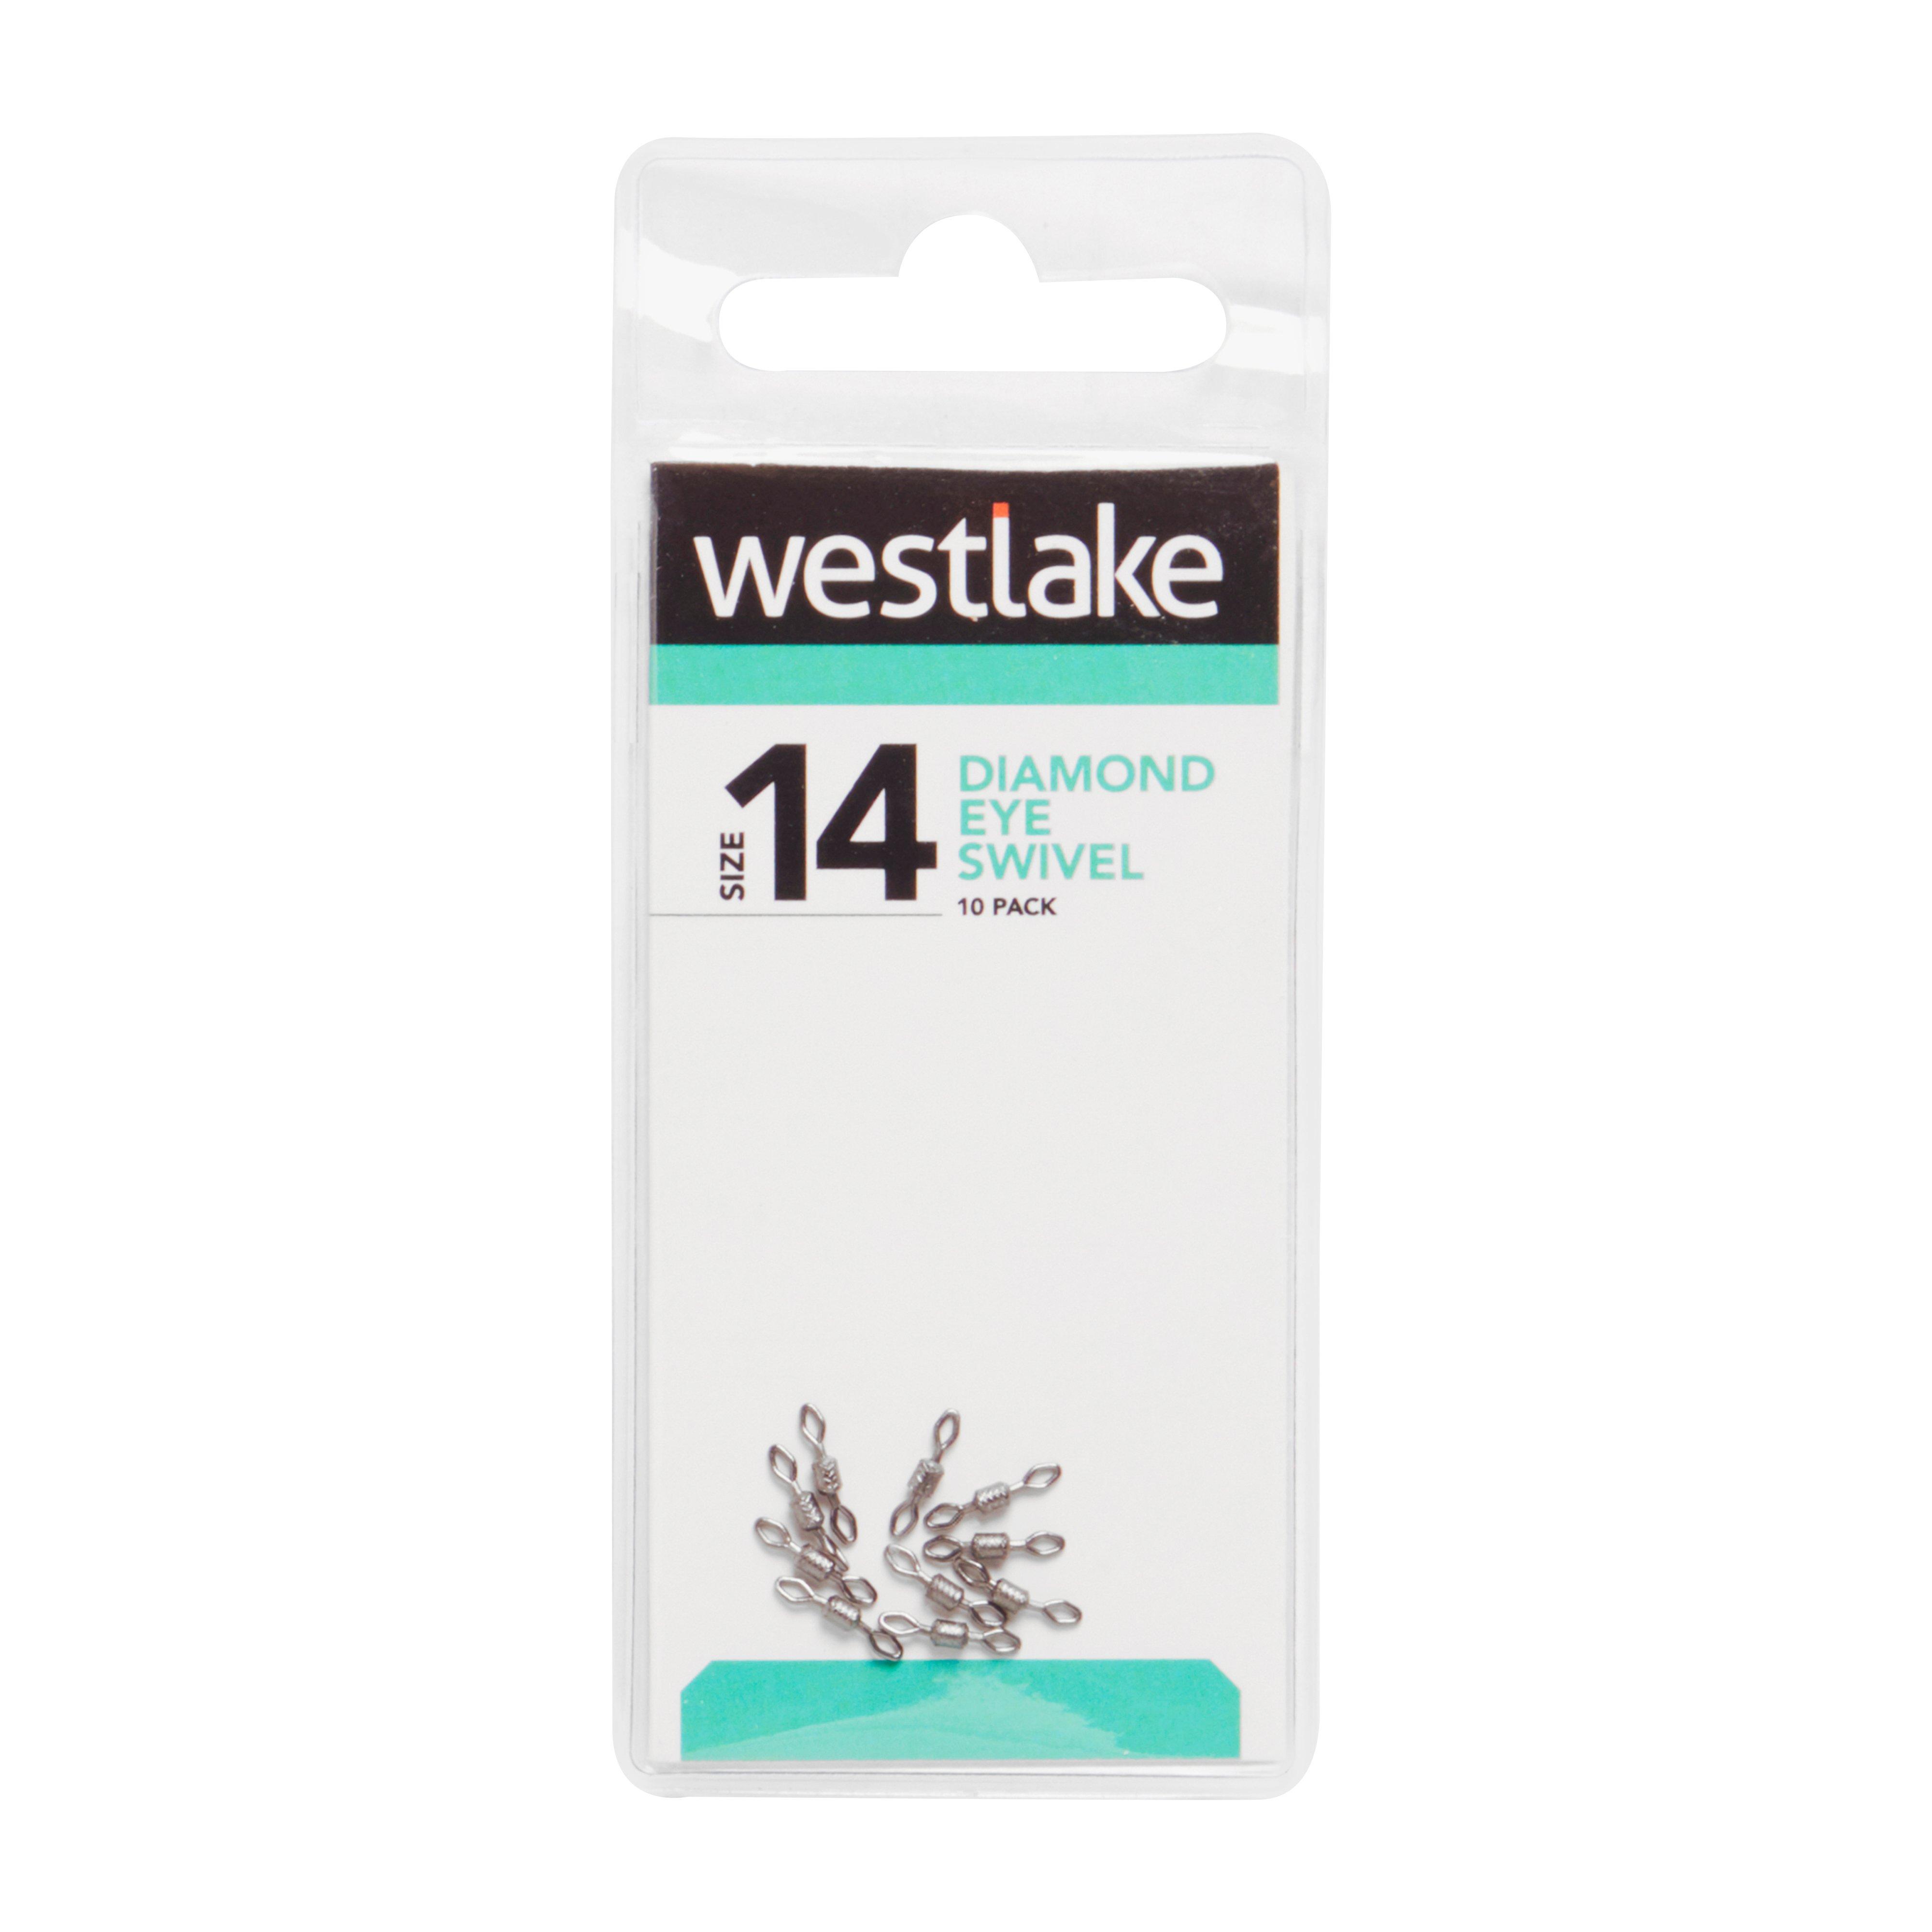 Westlake Diamond Eye Swivel Size14 10Pc Review